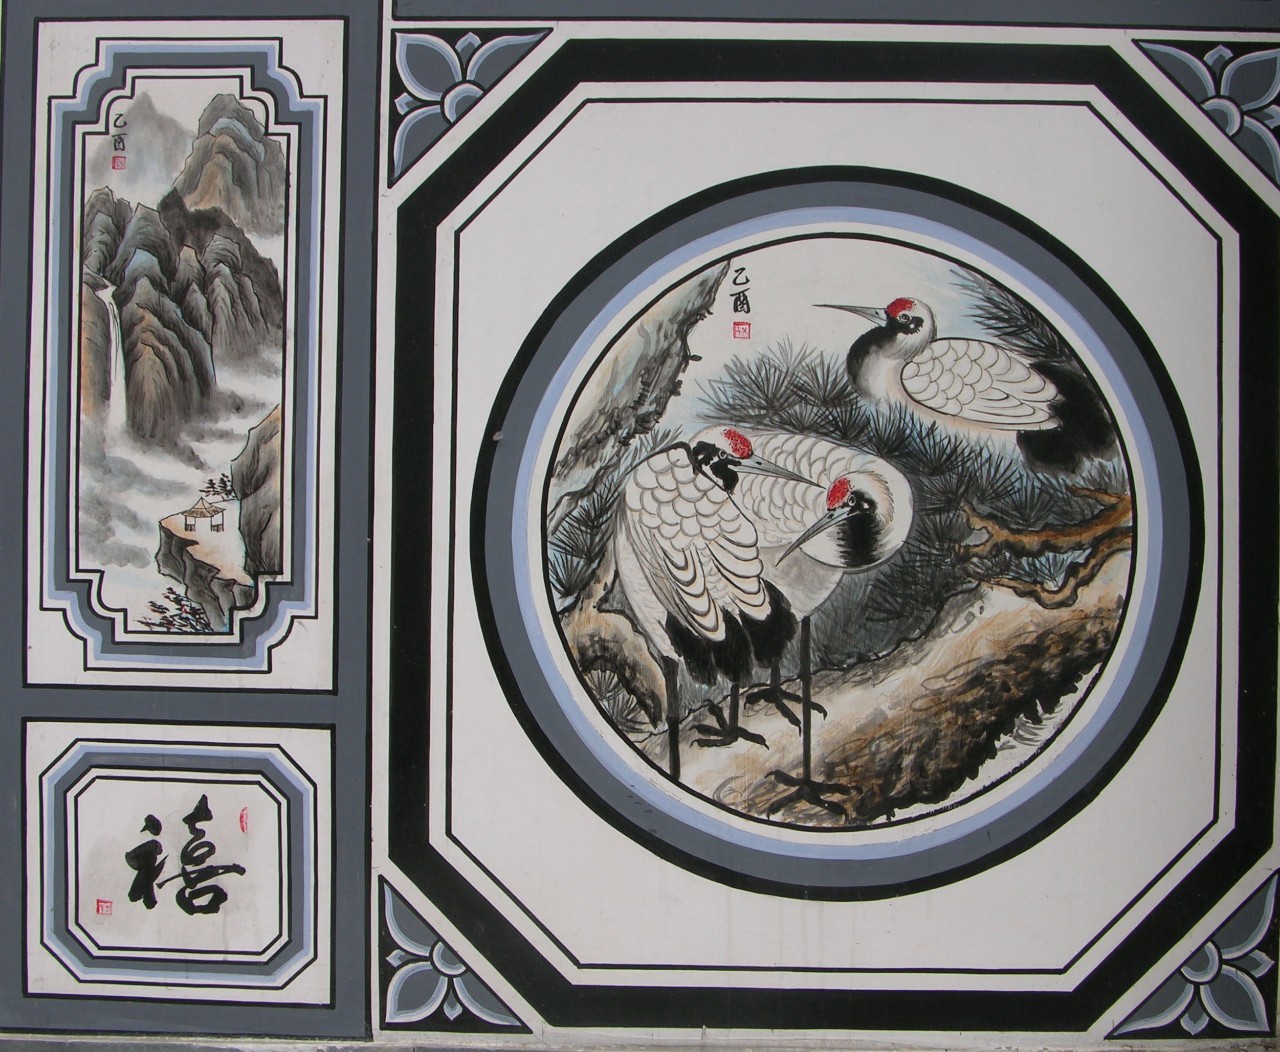 2008年2月,白族民居彩绘被国务院公布列入第二批国家级非物质文化遗产